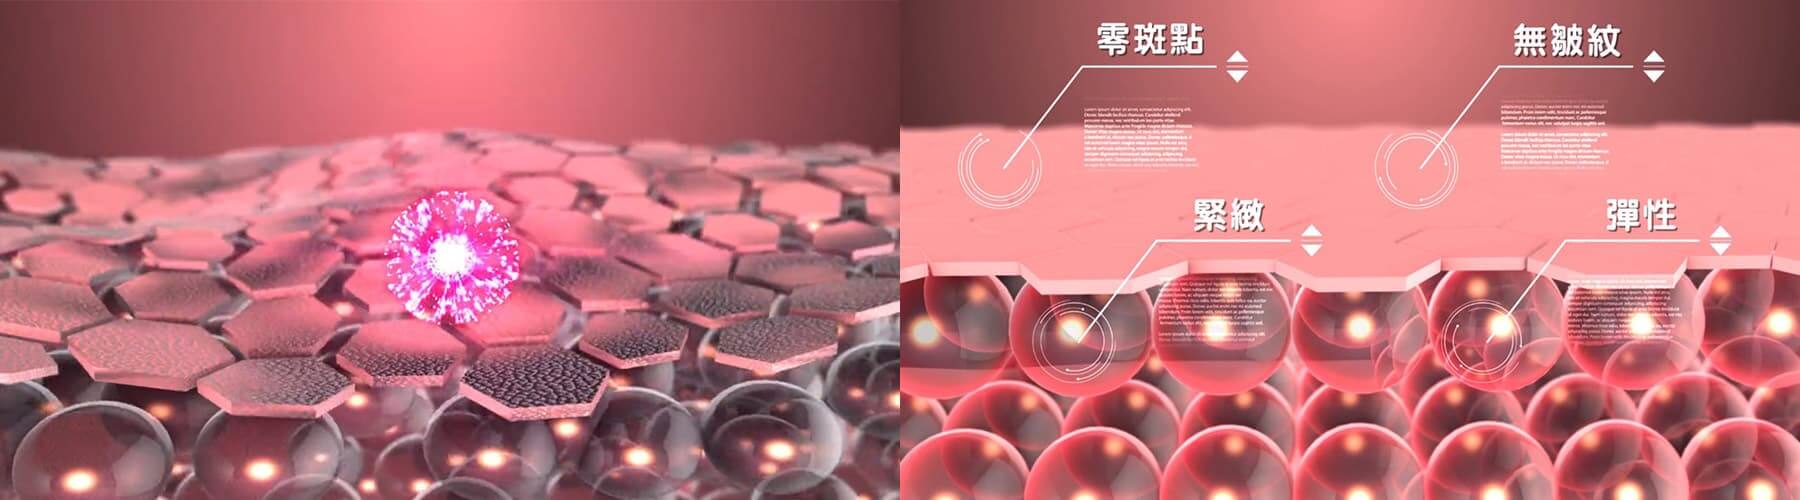 喜資XIZI幹細胞3D動畫影片-3